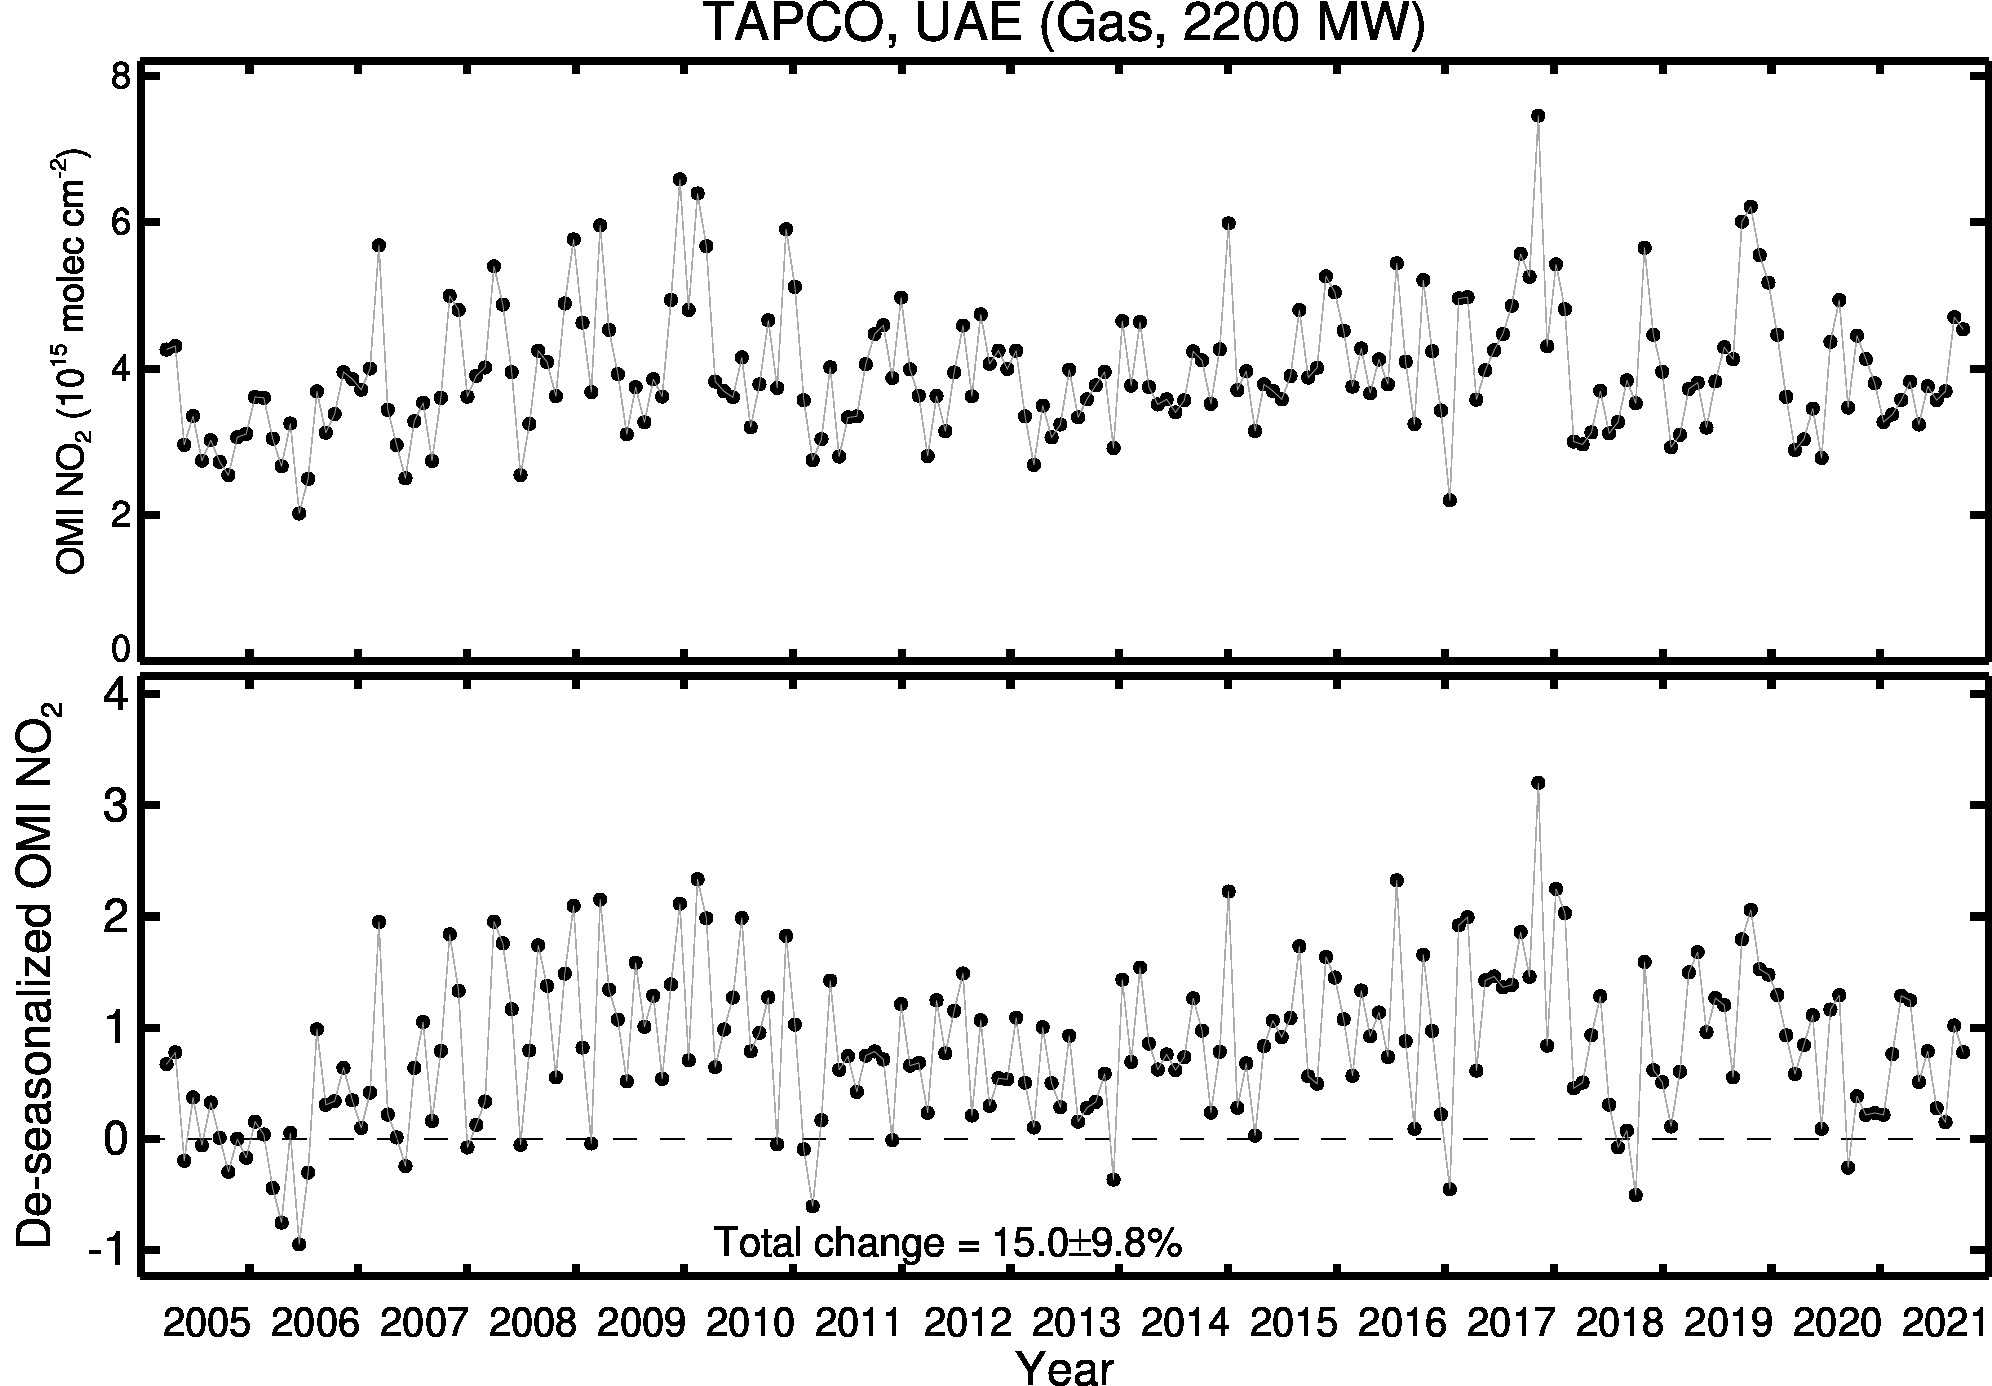 TAPCO Line Plot 2005-2021